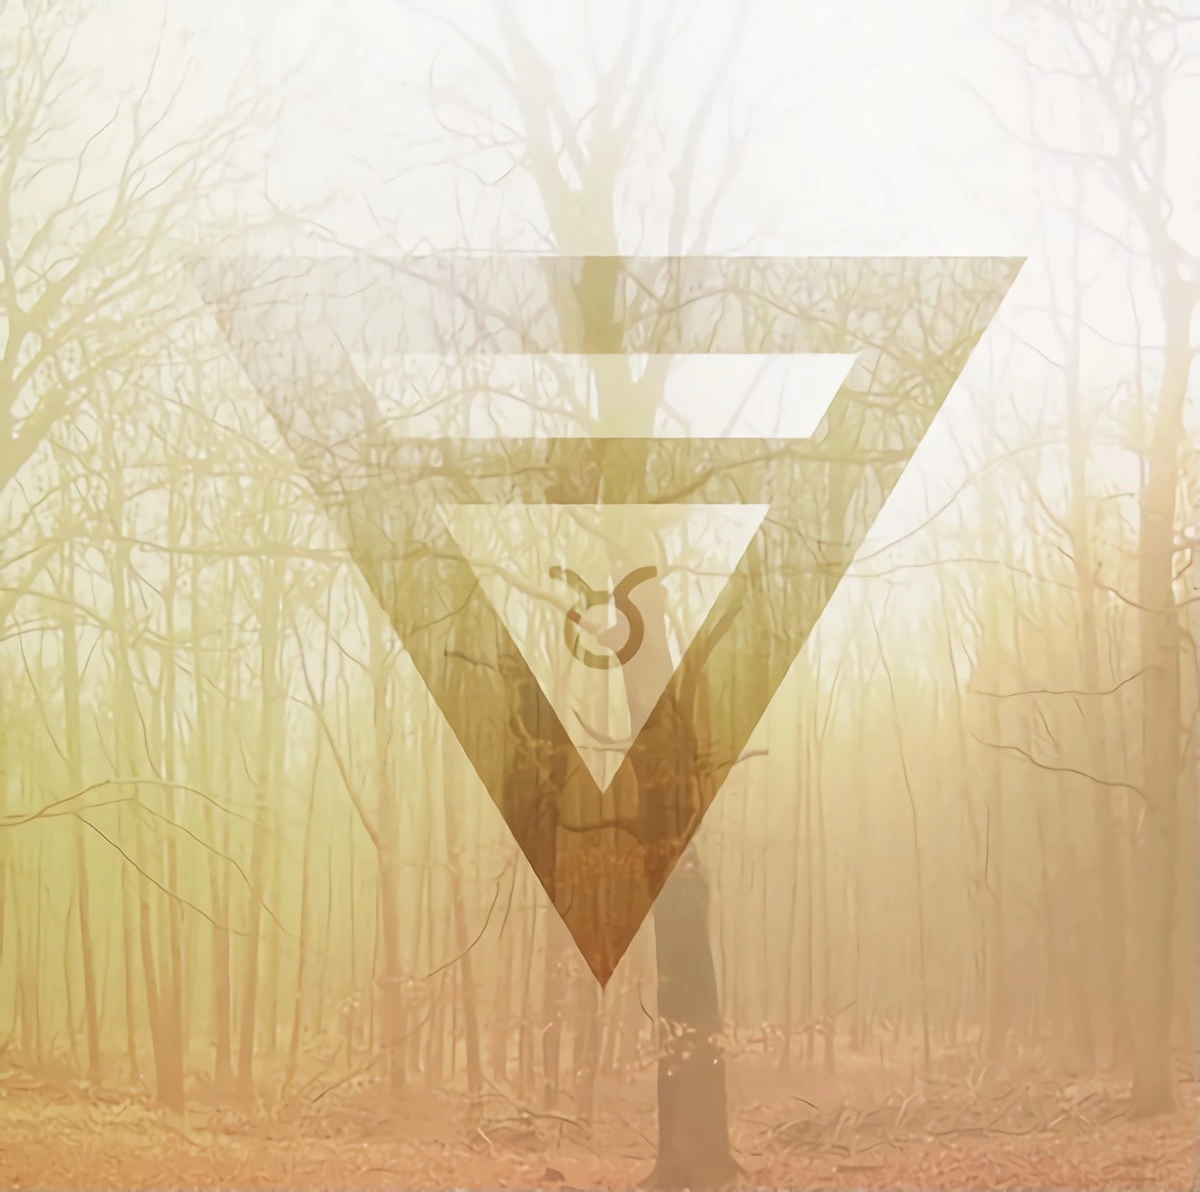 le symbole du signe astrologique du taureau inscrit dans un triangle sur fond un bois en automne